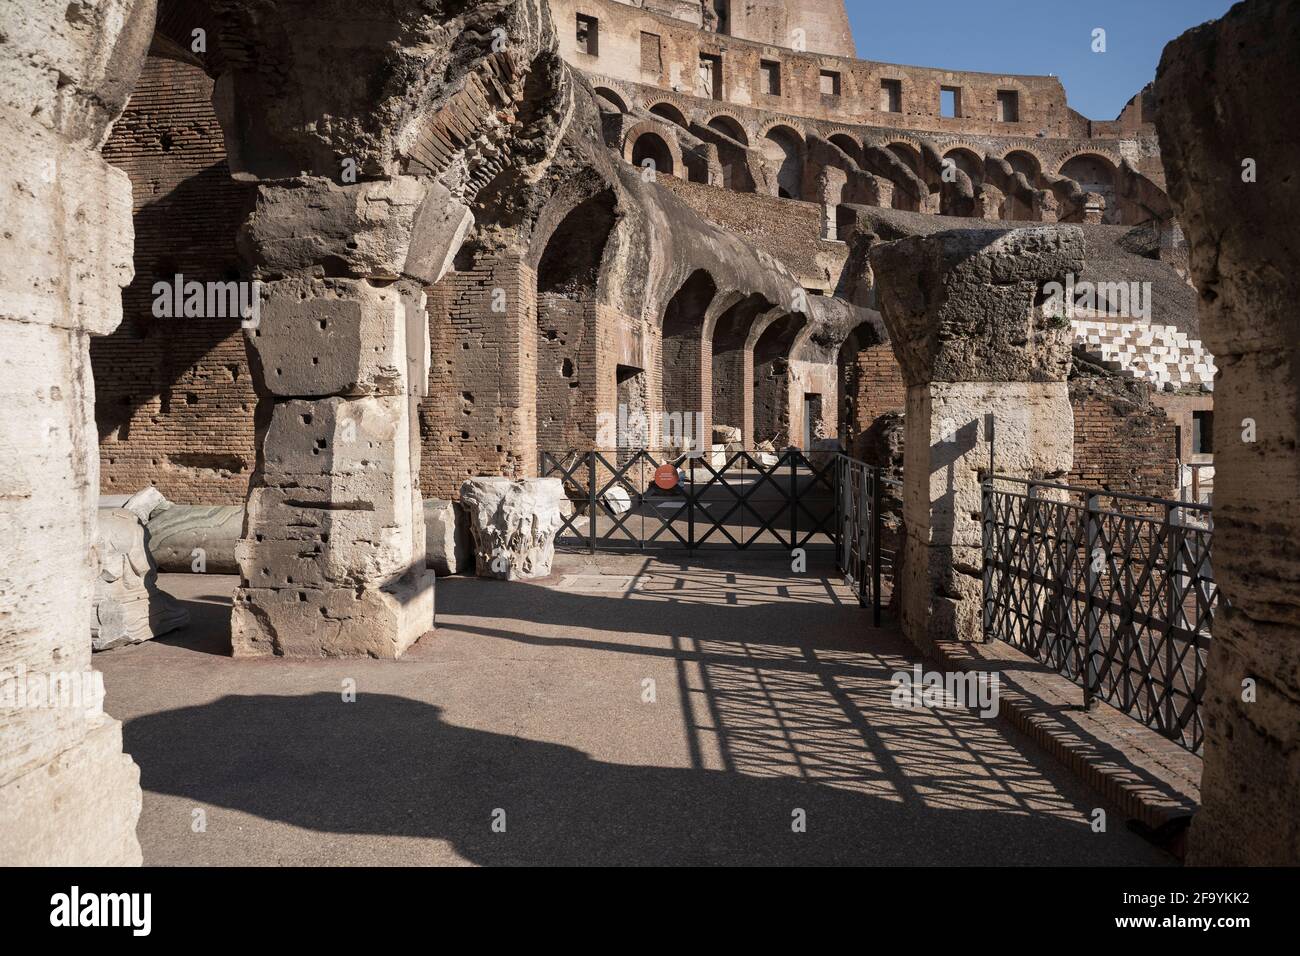 L'amphithéâtre Flavian, également connu sous le nom de Colisée, est complètement vide pendant la pandémie de Covid 19. Rome, Italie 03 04 2021 Banque D'Images